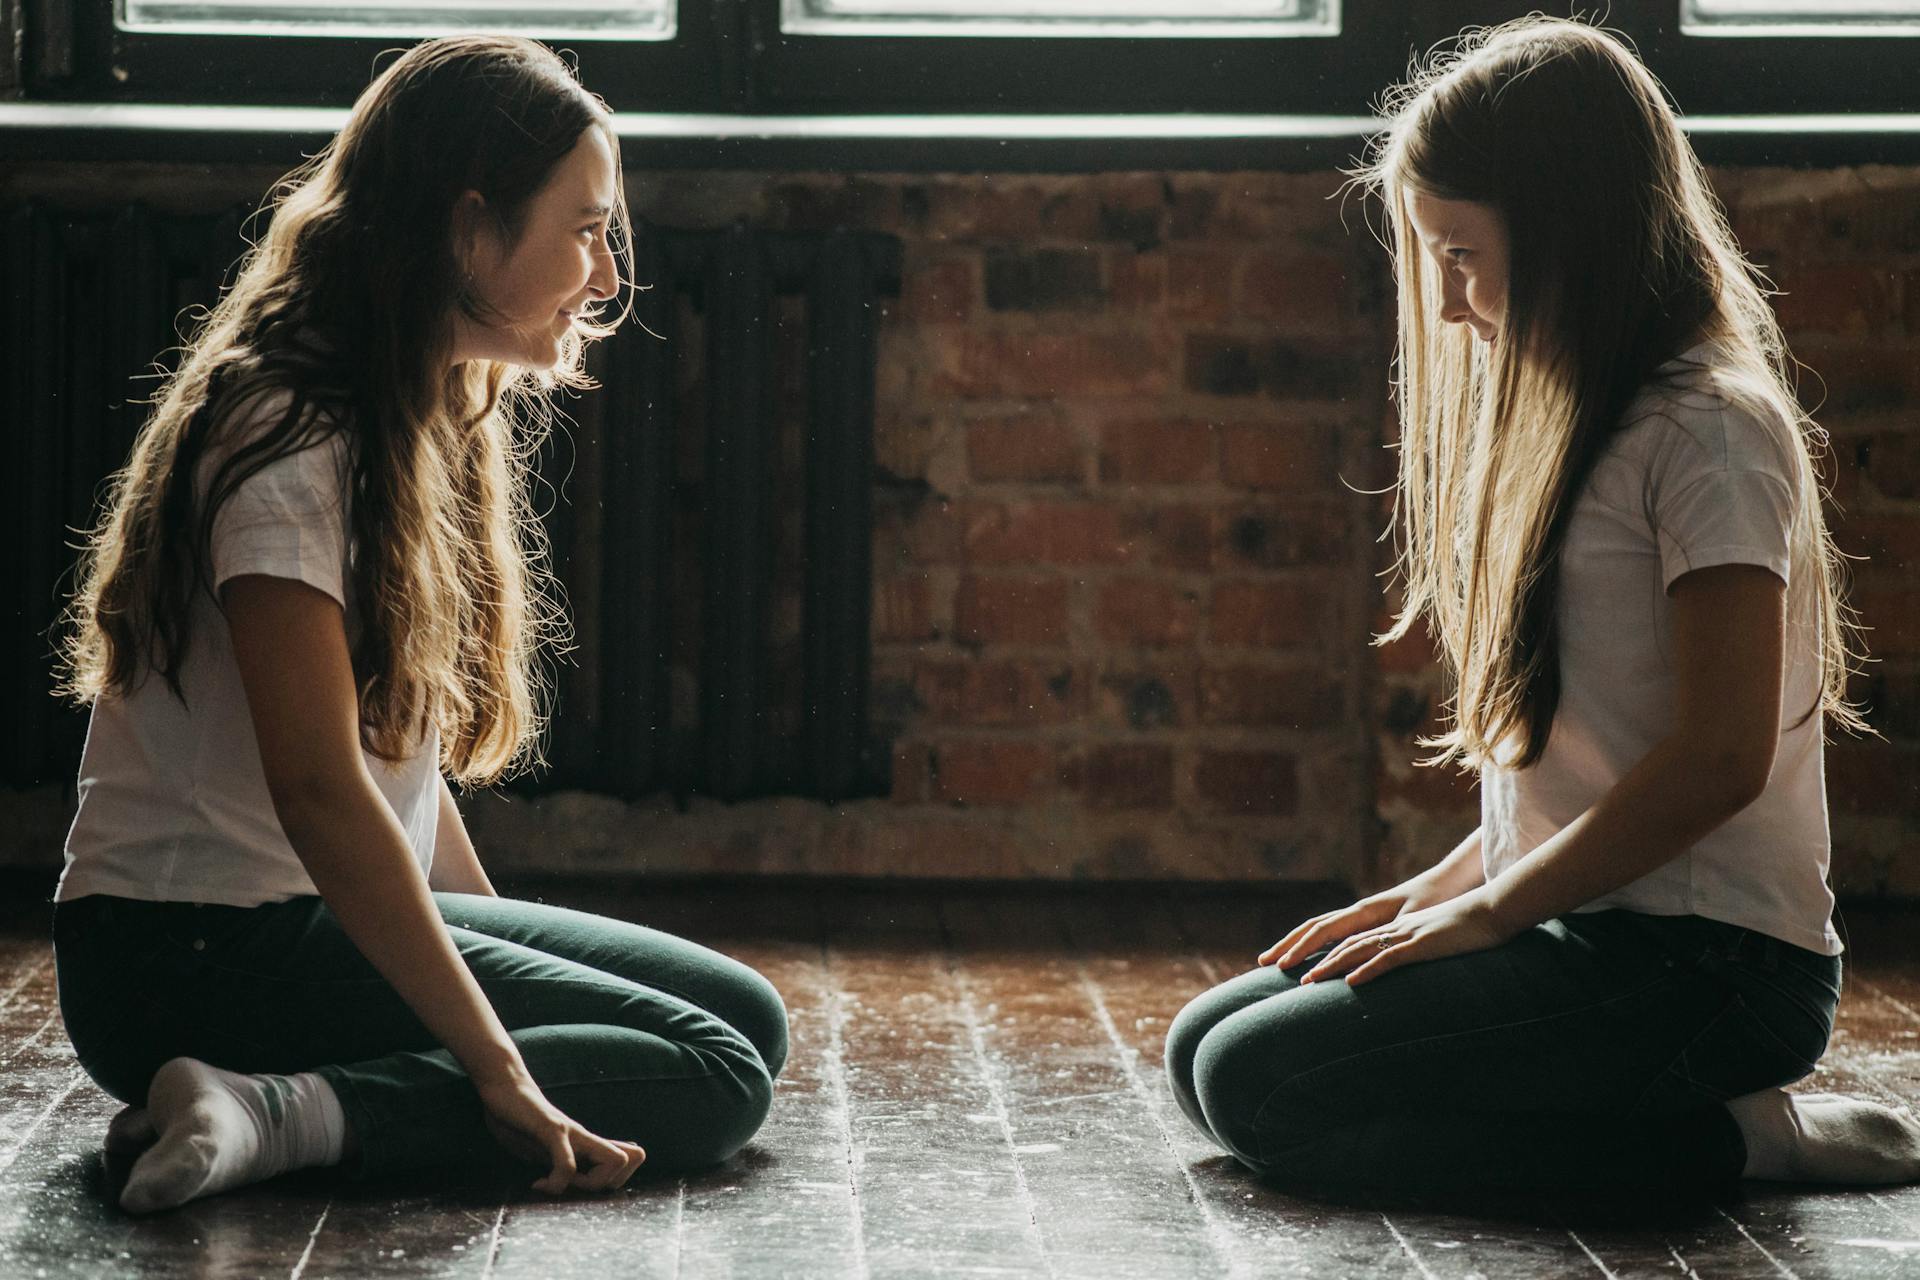 Two teenage girls sitting on the floor | Source: Pexels